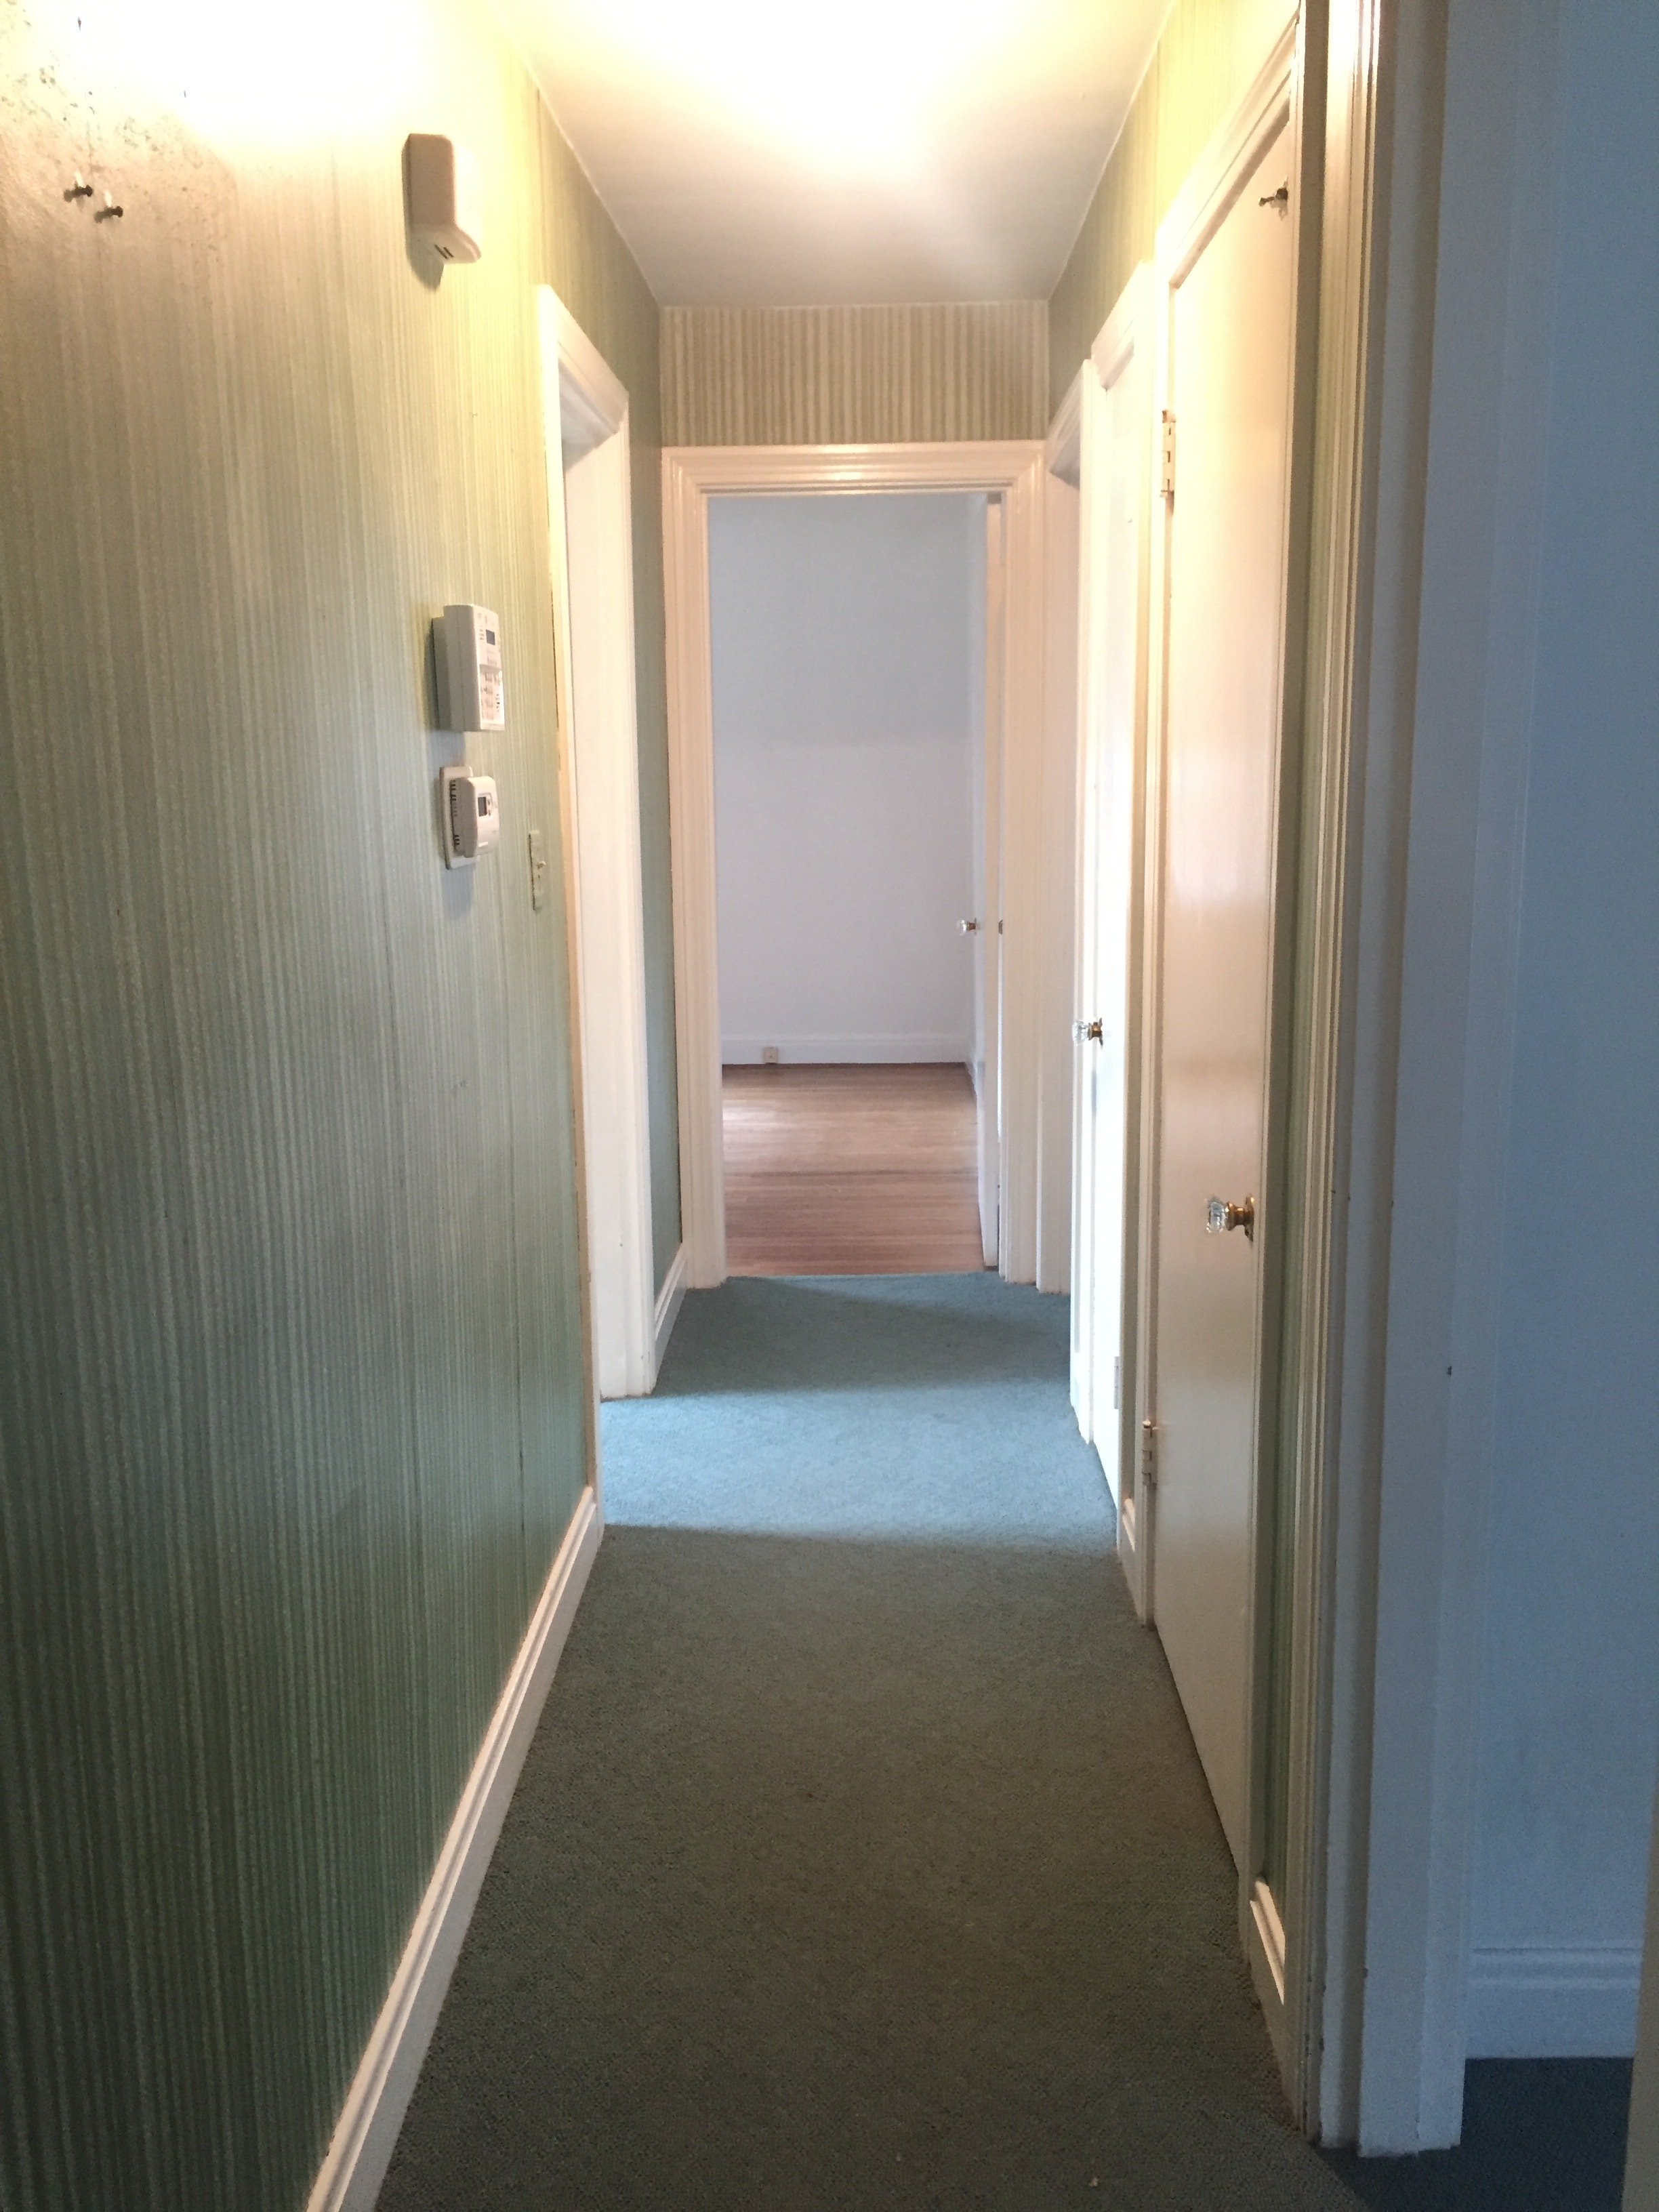 Hallway to first floor bedrooms